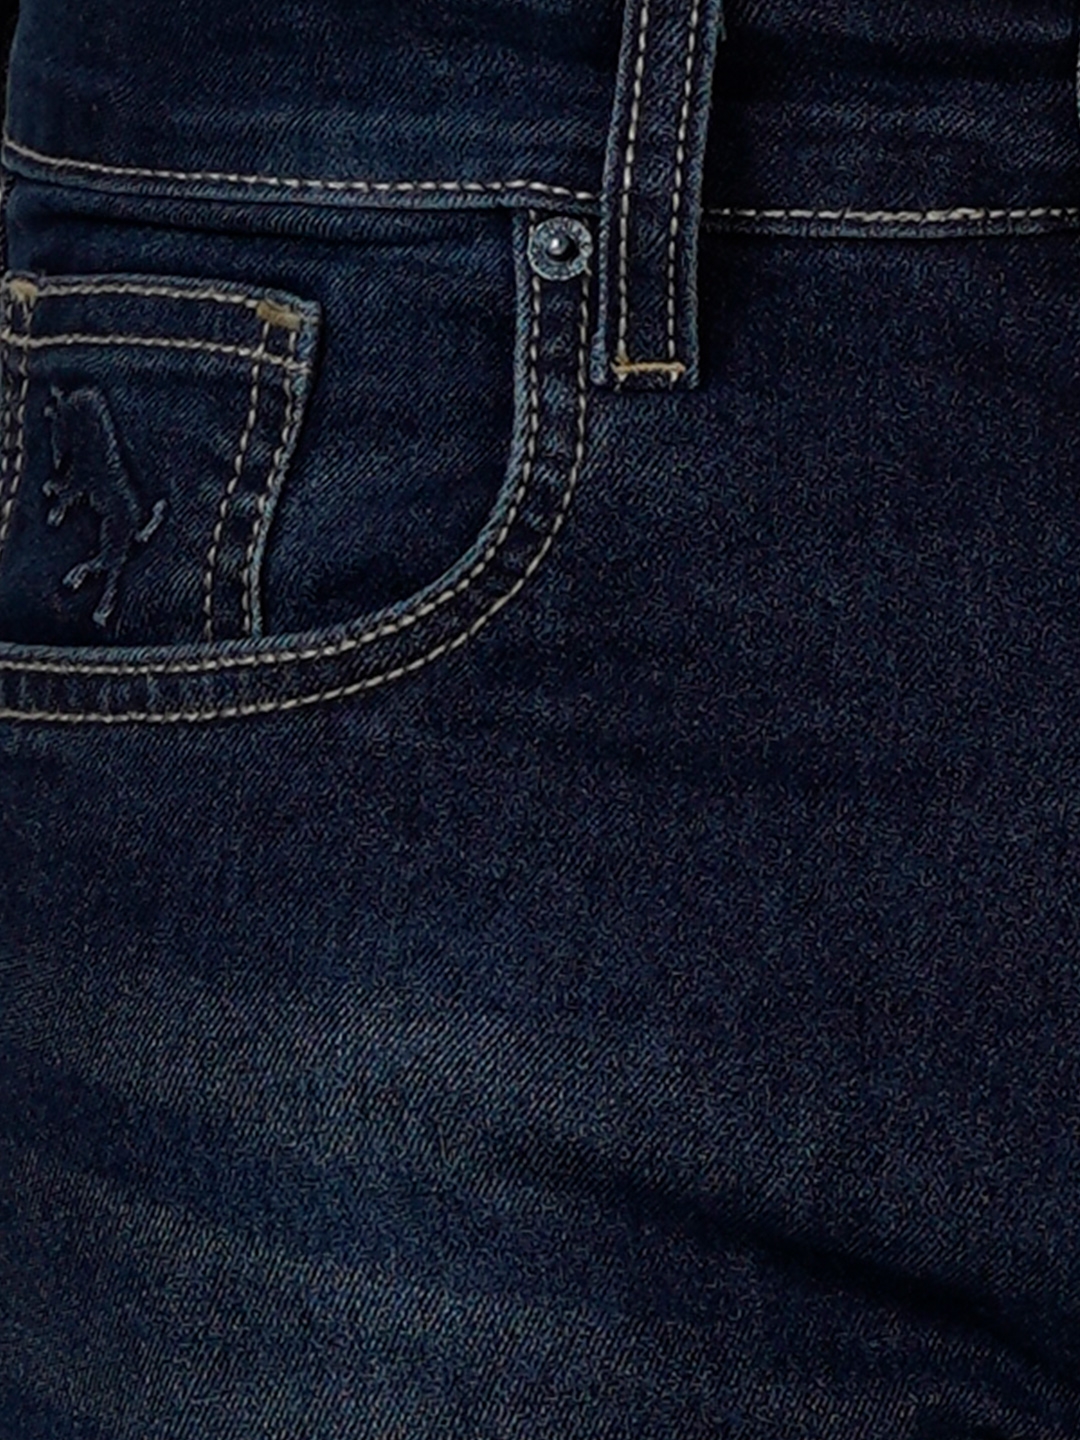 D'cot by Donear Men's Navy Blue Cotton Jeans